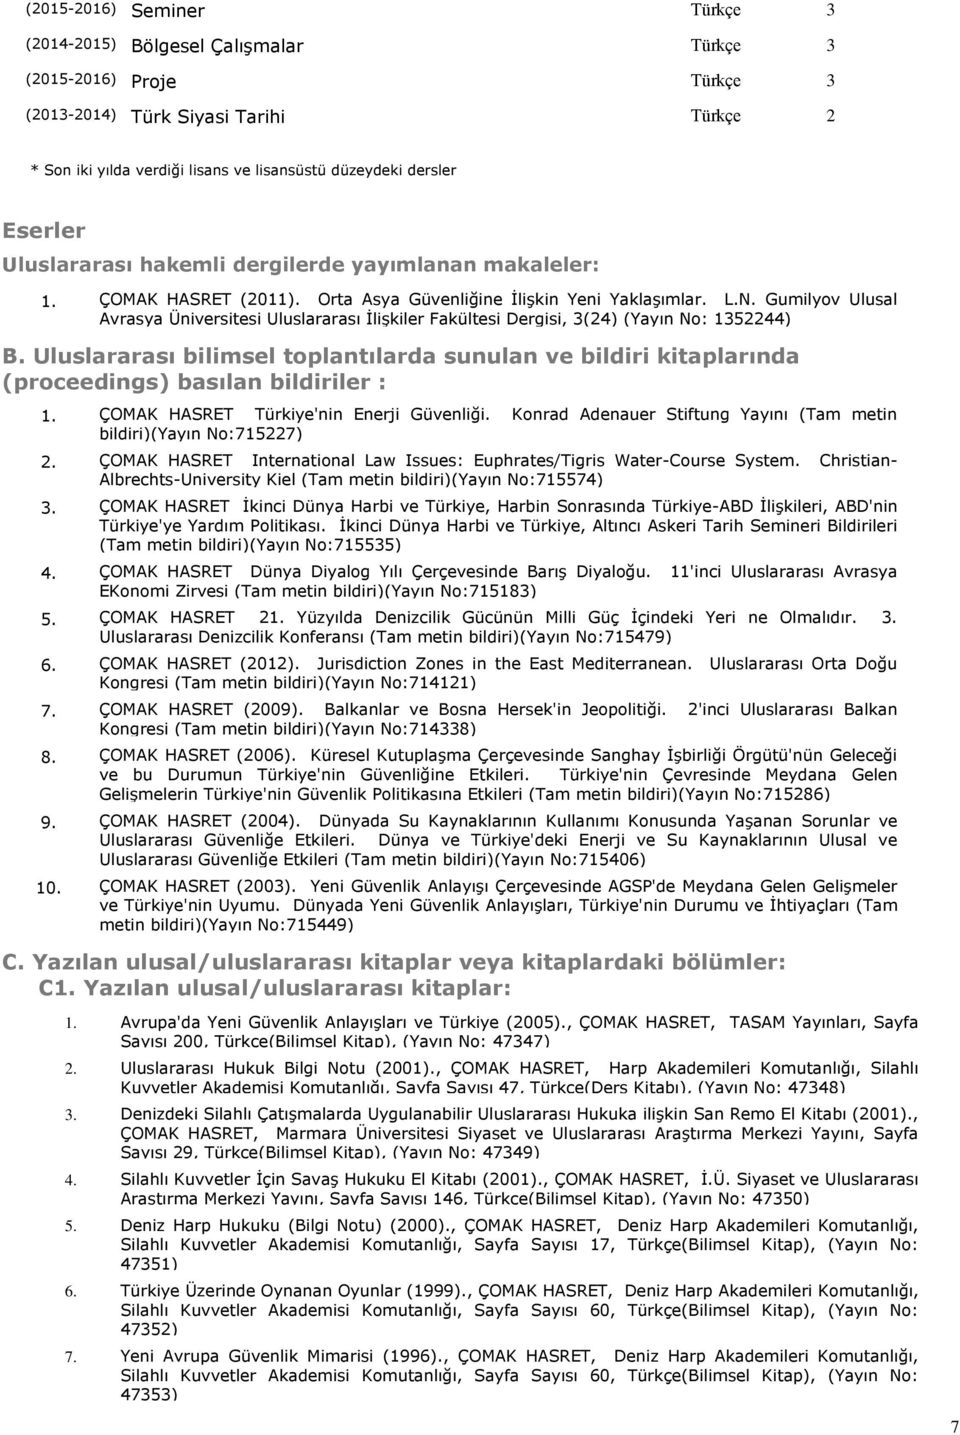 Gumilyov Ulusal Avrasya Üniversitesi Uluslararası İlişkiler Fakültesi Dergisi, 3(24) (Yayın No: 1352244) B.